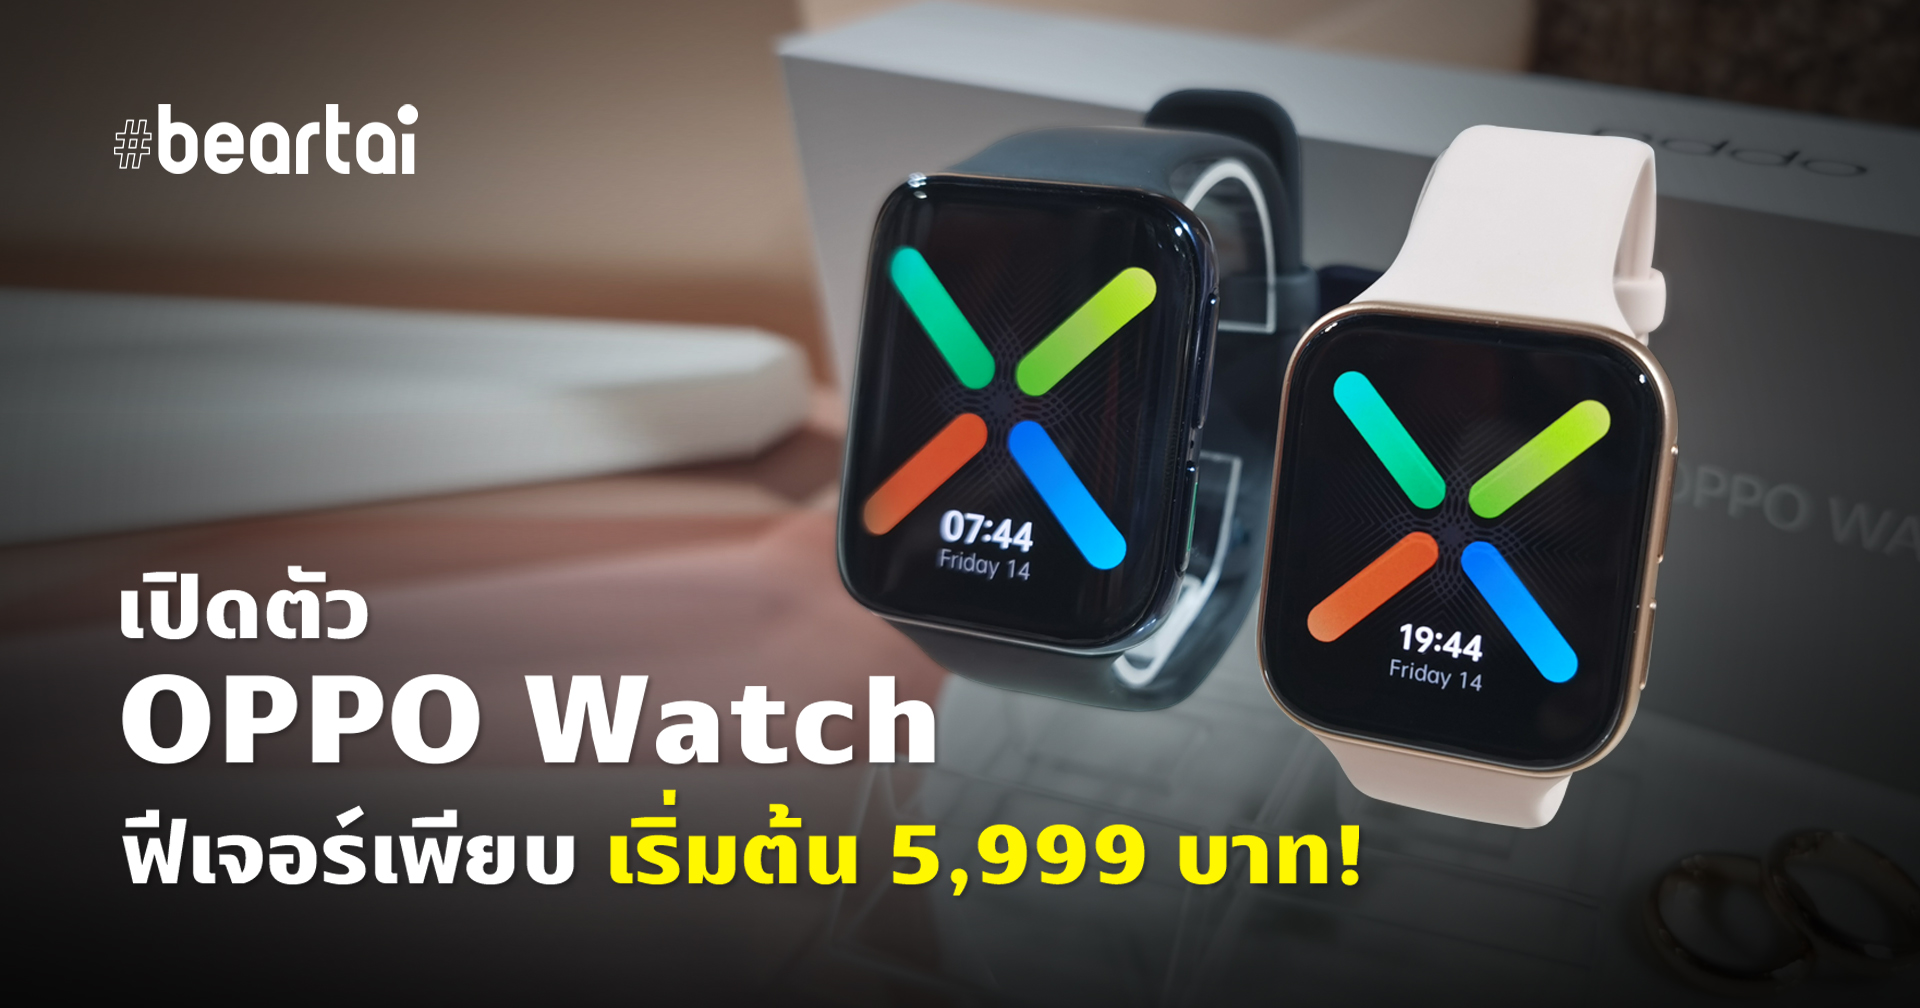 เปิดตัว OPPO Watch นาฬิกาอัจฉริยะ ฟีเจอร์เพียบ!! ราคาเริ่มต้น 5,999 บาท